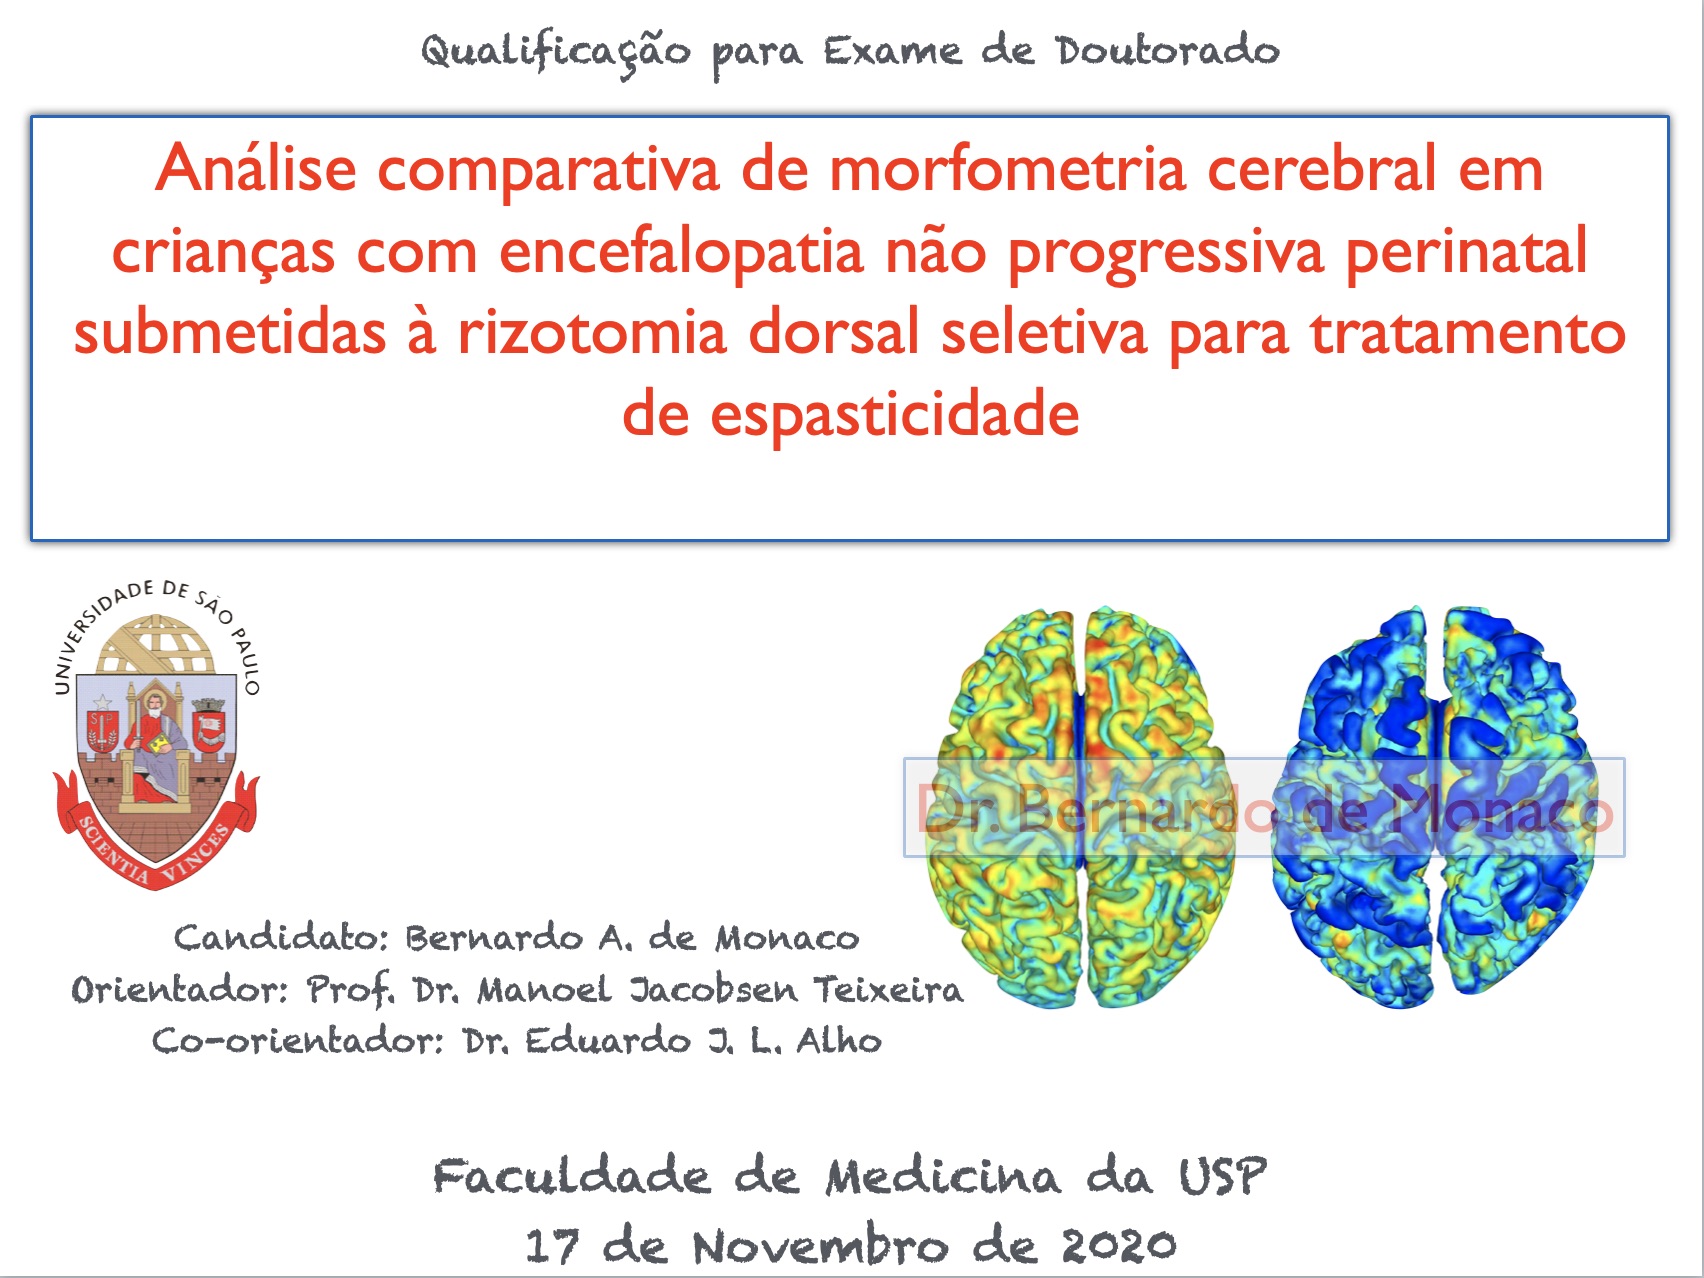 Defesa de qualificação para o doutorado - USP - Dr. Bernardo de Monaco - 2020